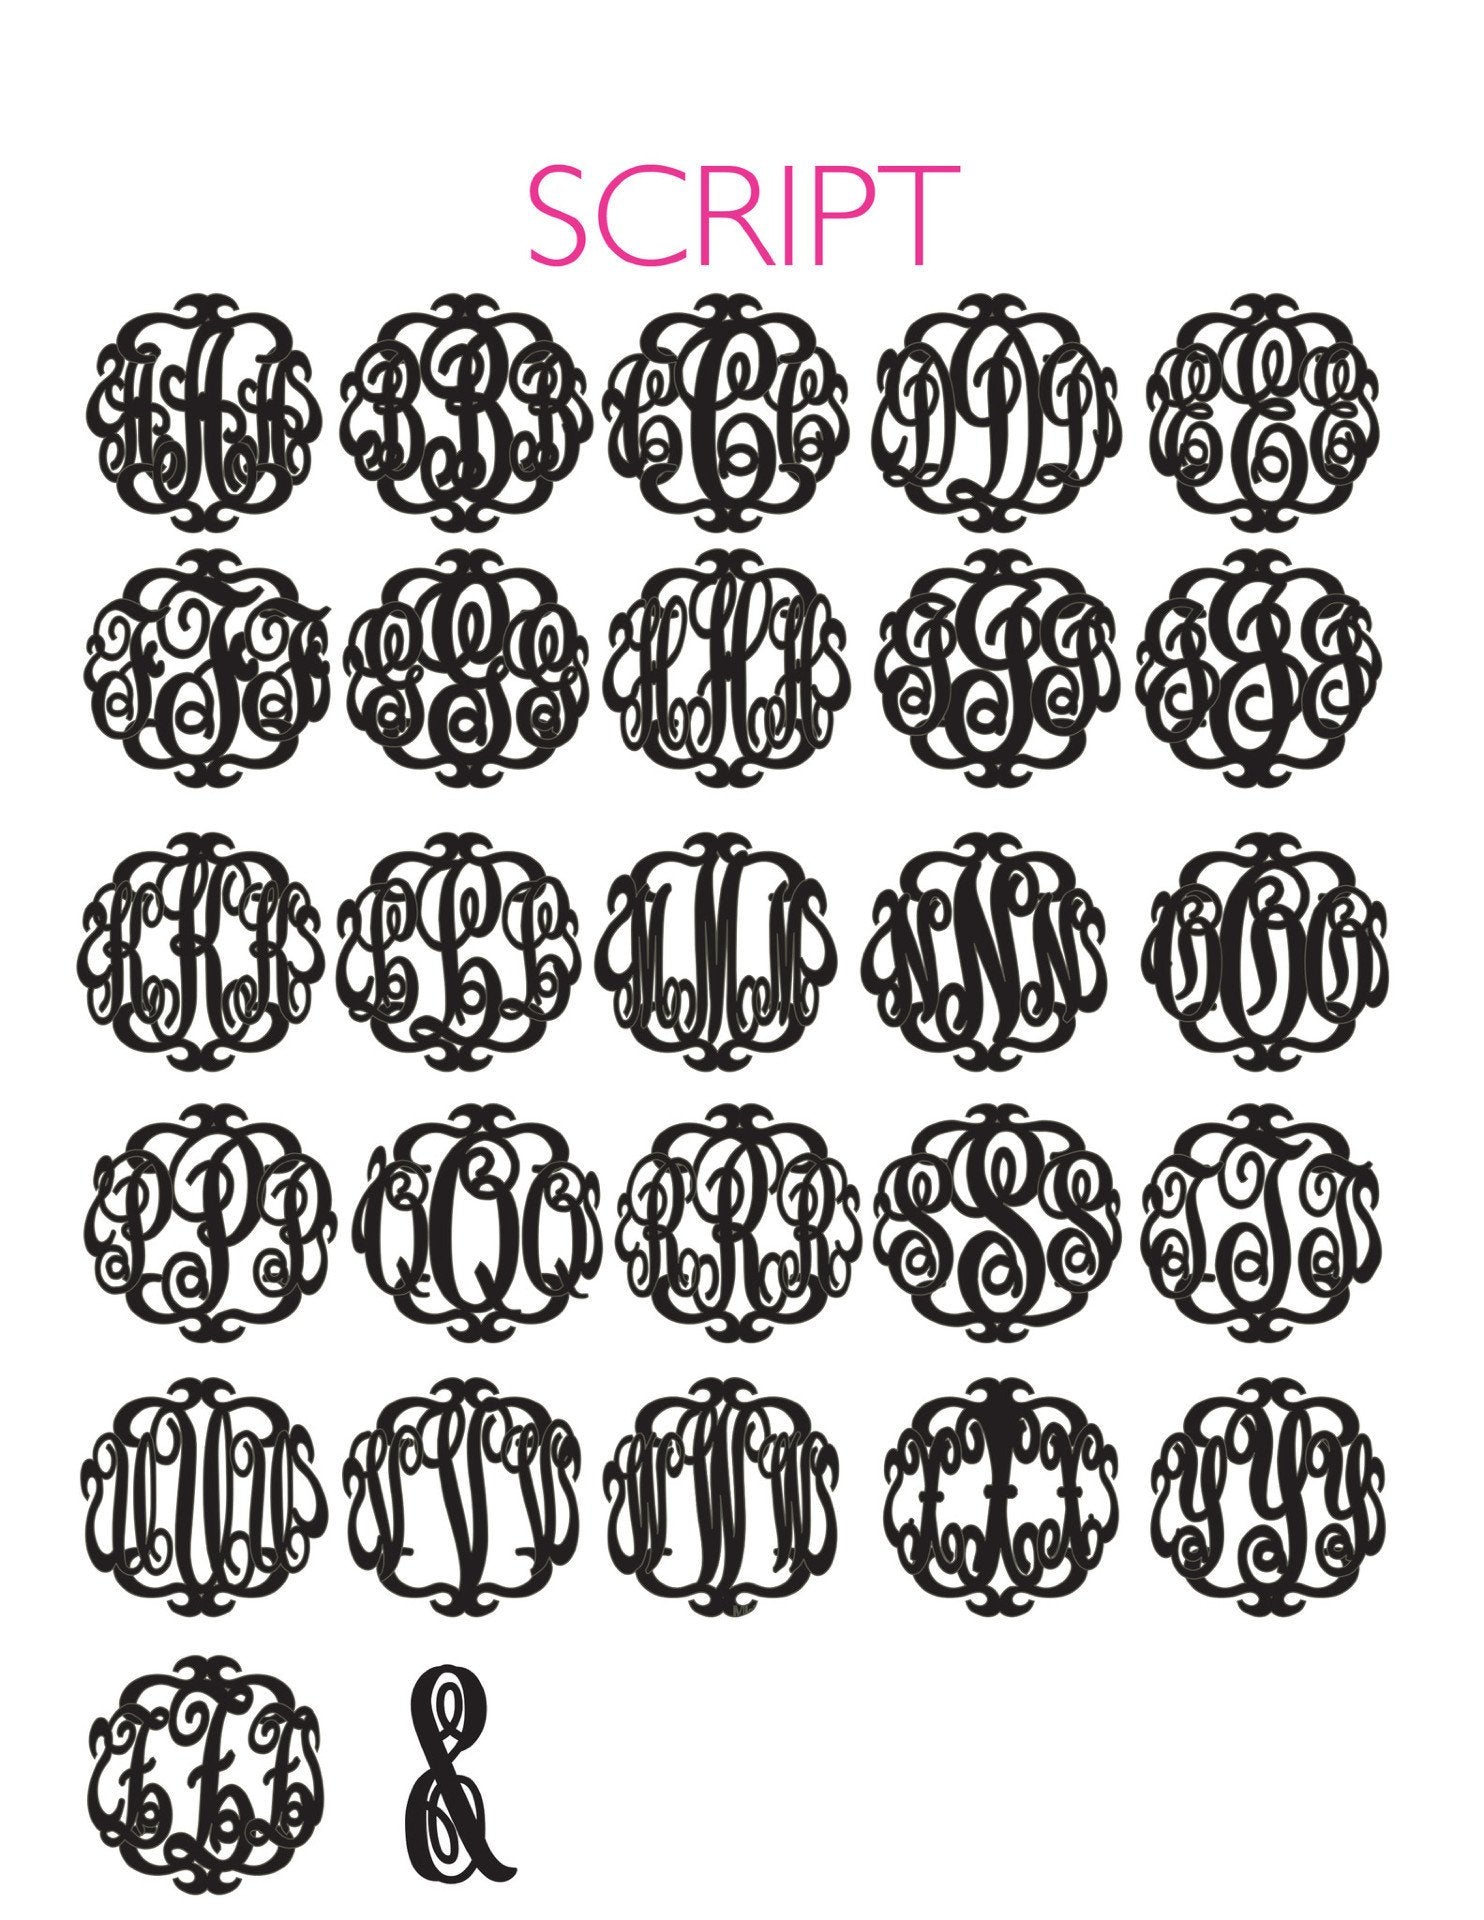 Sample "MST" Paris Monogram Necklace